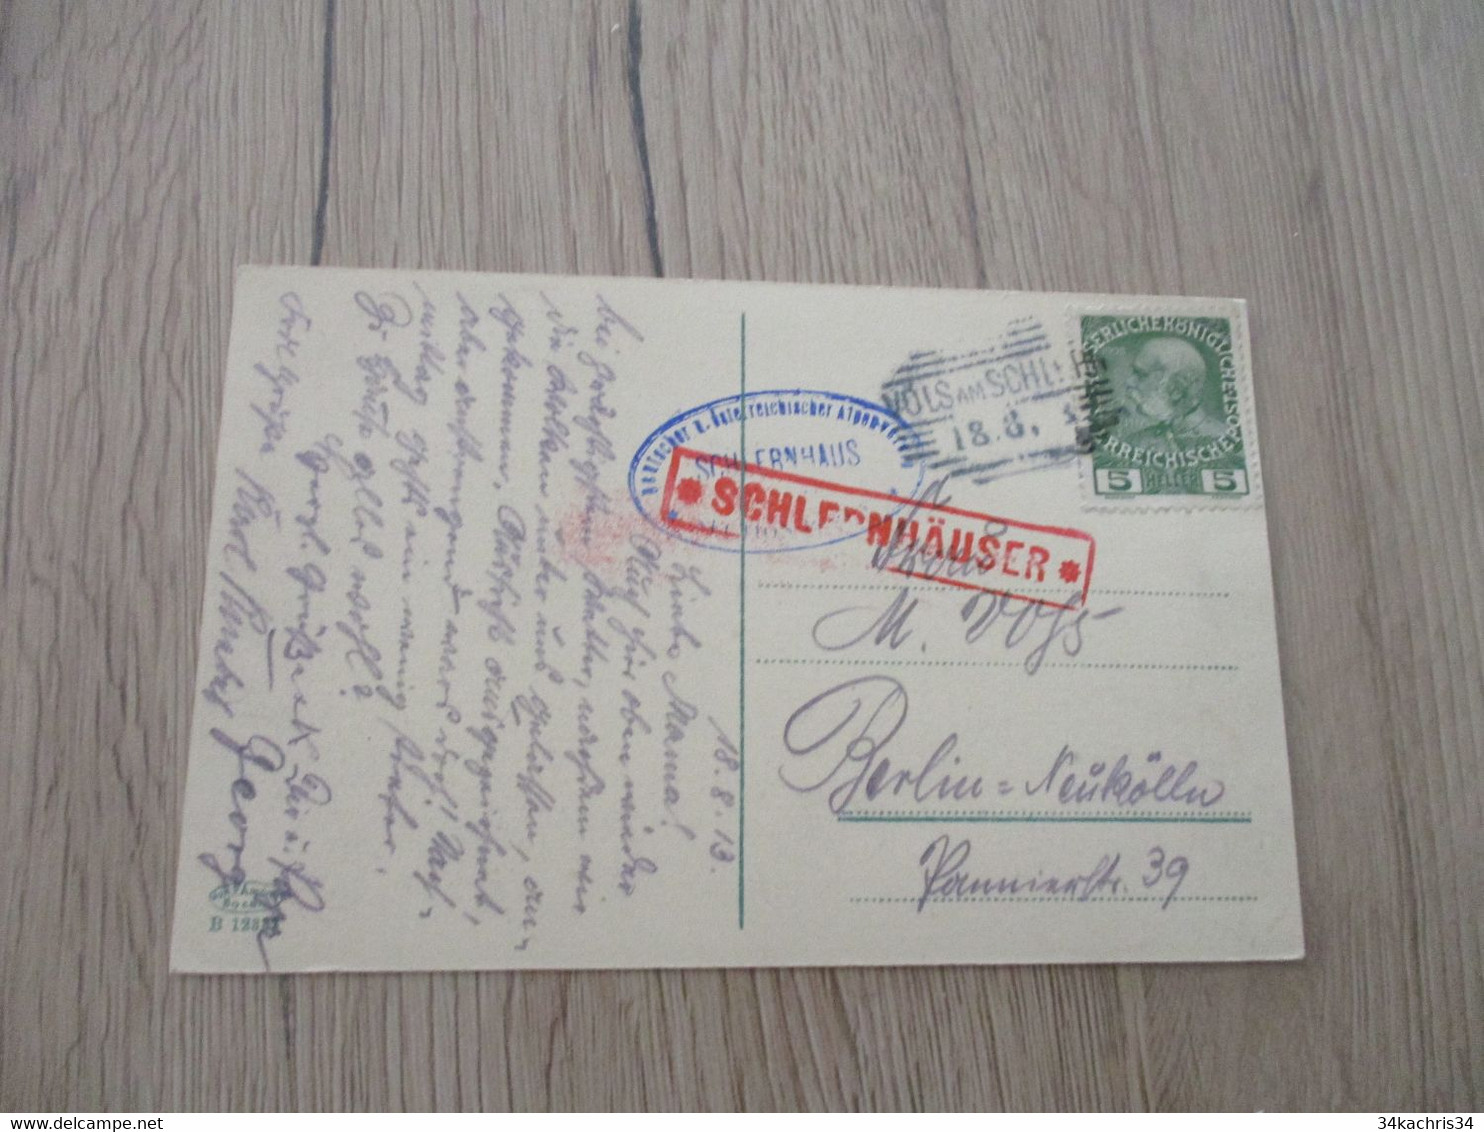 Autriche Collection Spécialisée Guerre Postablagen Postkantoor Schlernhauser Griff E Rouge - Frankeermachines (EMA)